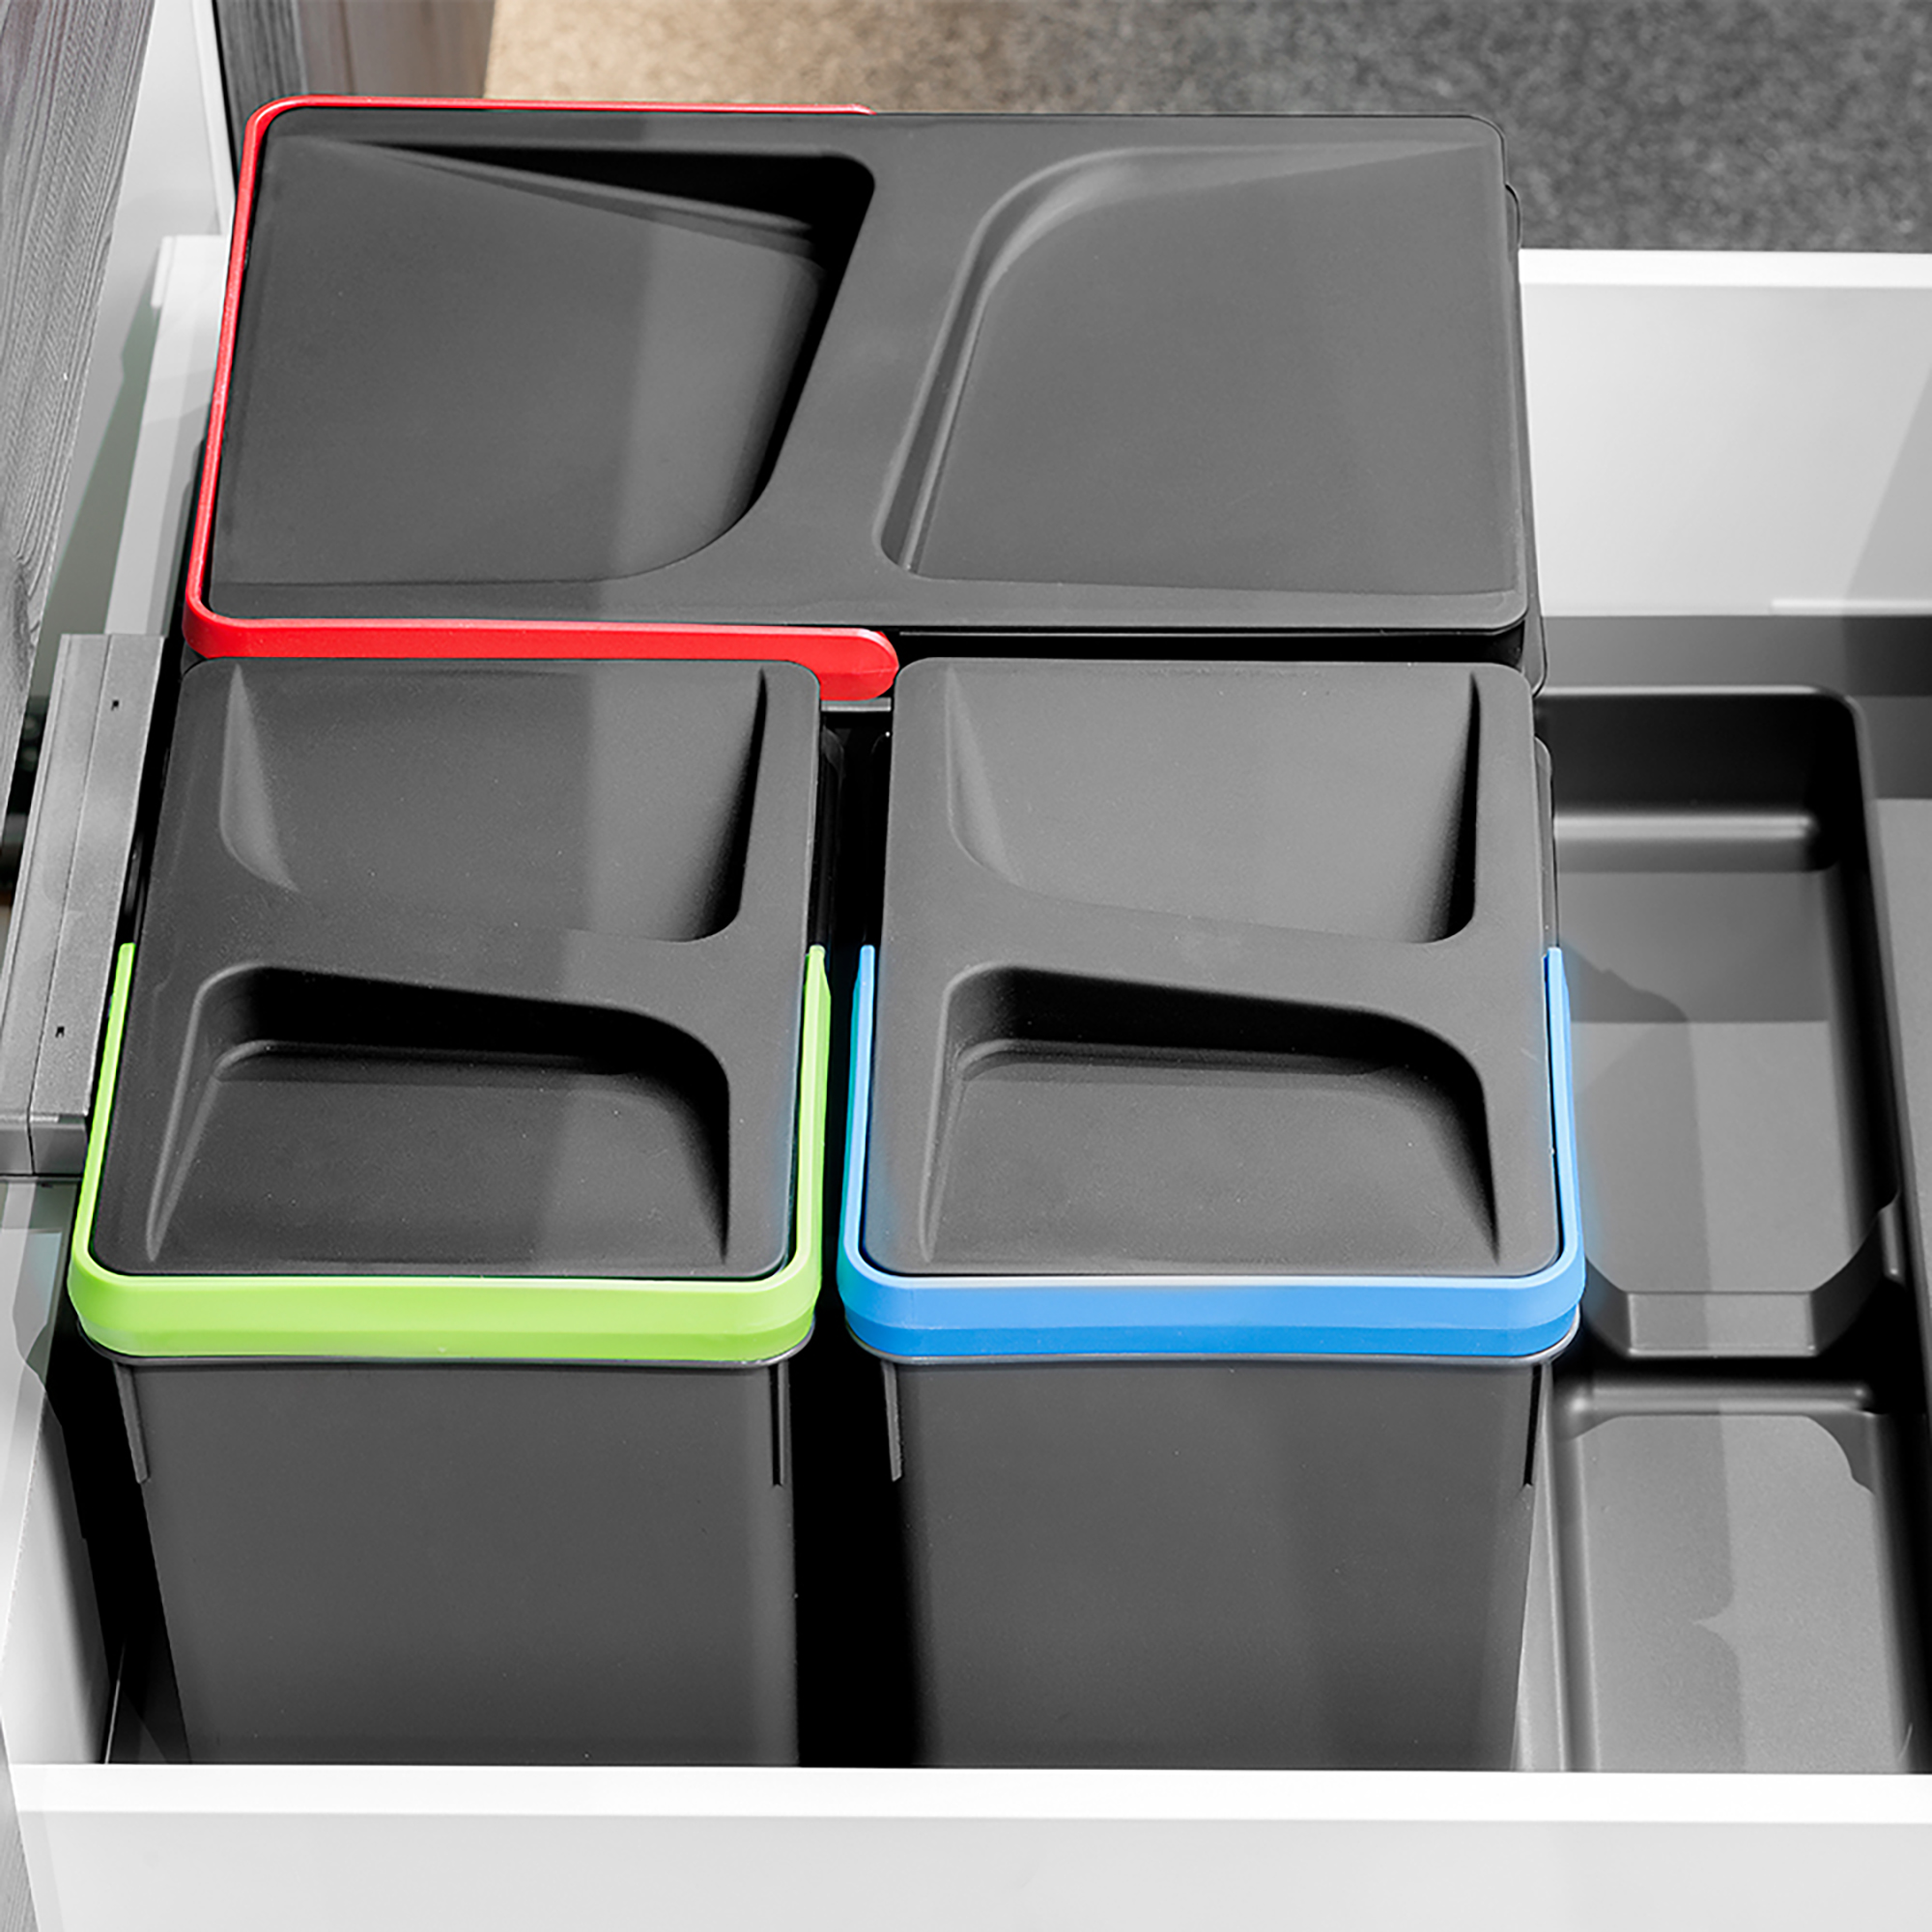  Poubelles pour tiroir de cuisine Recycle, Hauteur 216, 1x12 + 2x6, Plastique gris antracite, Plastique.